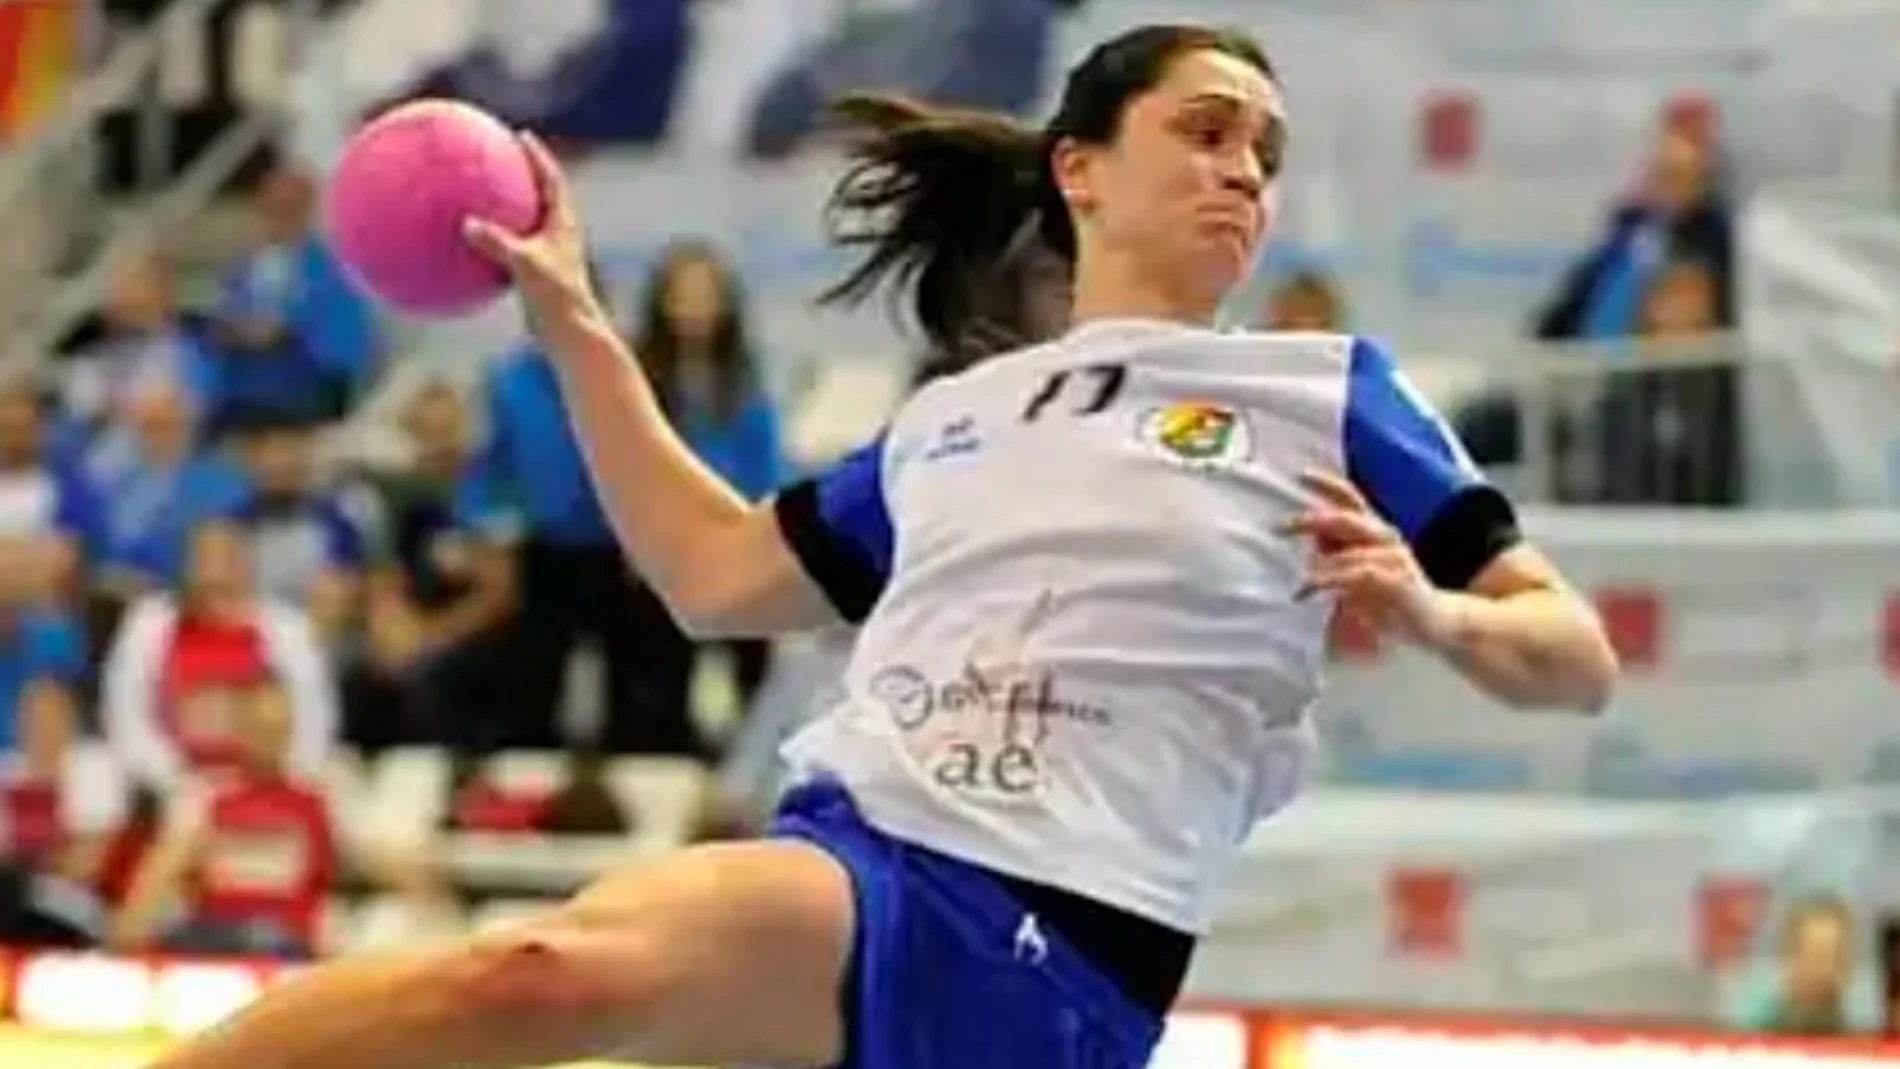 La jugadora de balonmano vallisoletana, ex del Aula Cultural, Amaia González de Garibay, durante un partido